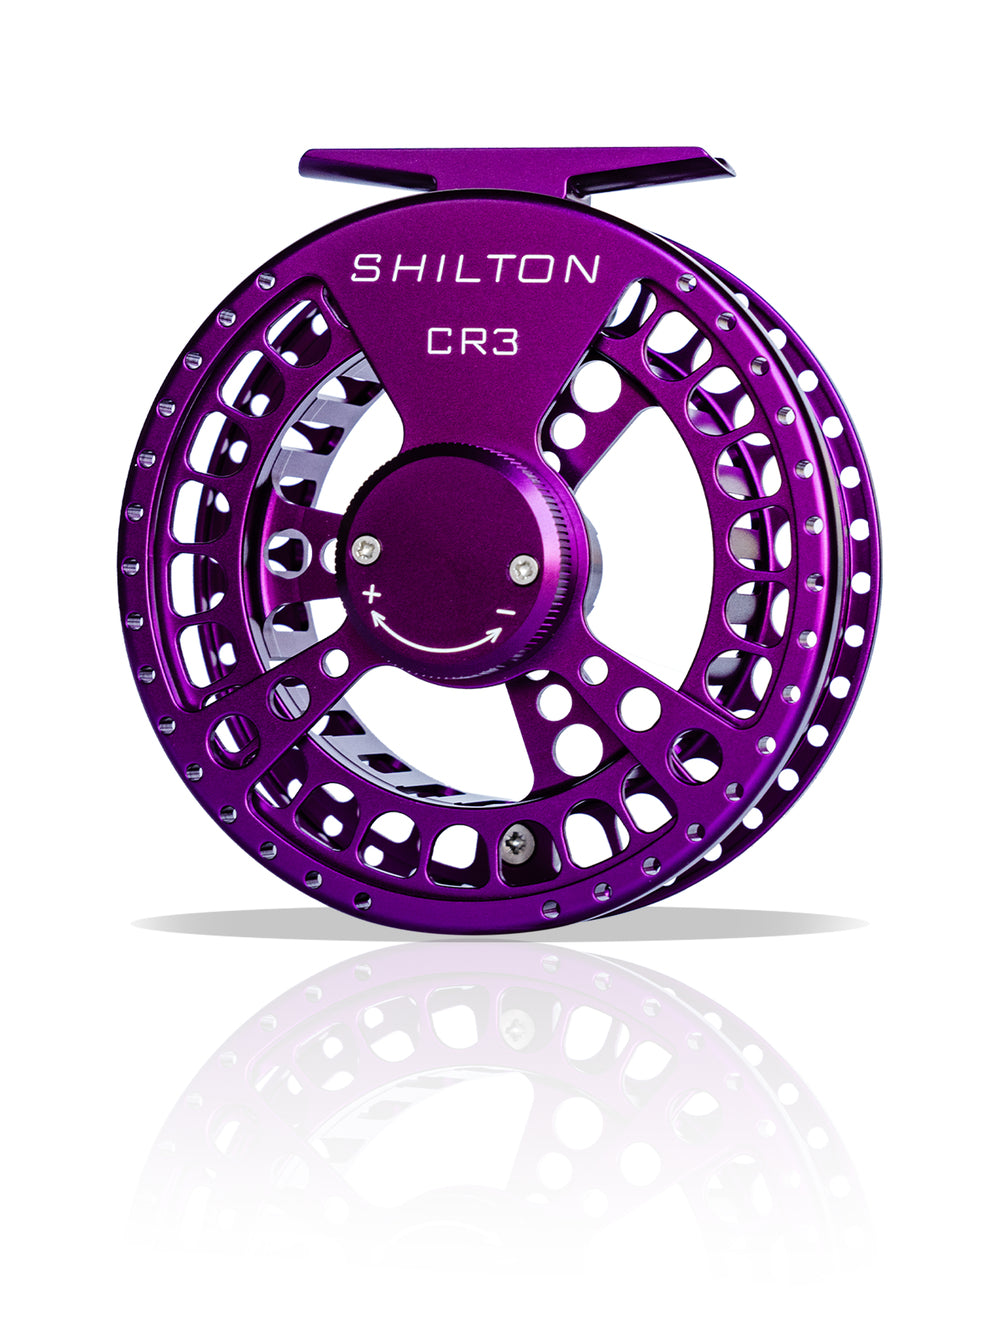 Shilton CR3 Reel (5-6wt) in Purple